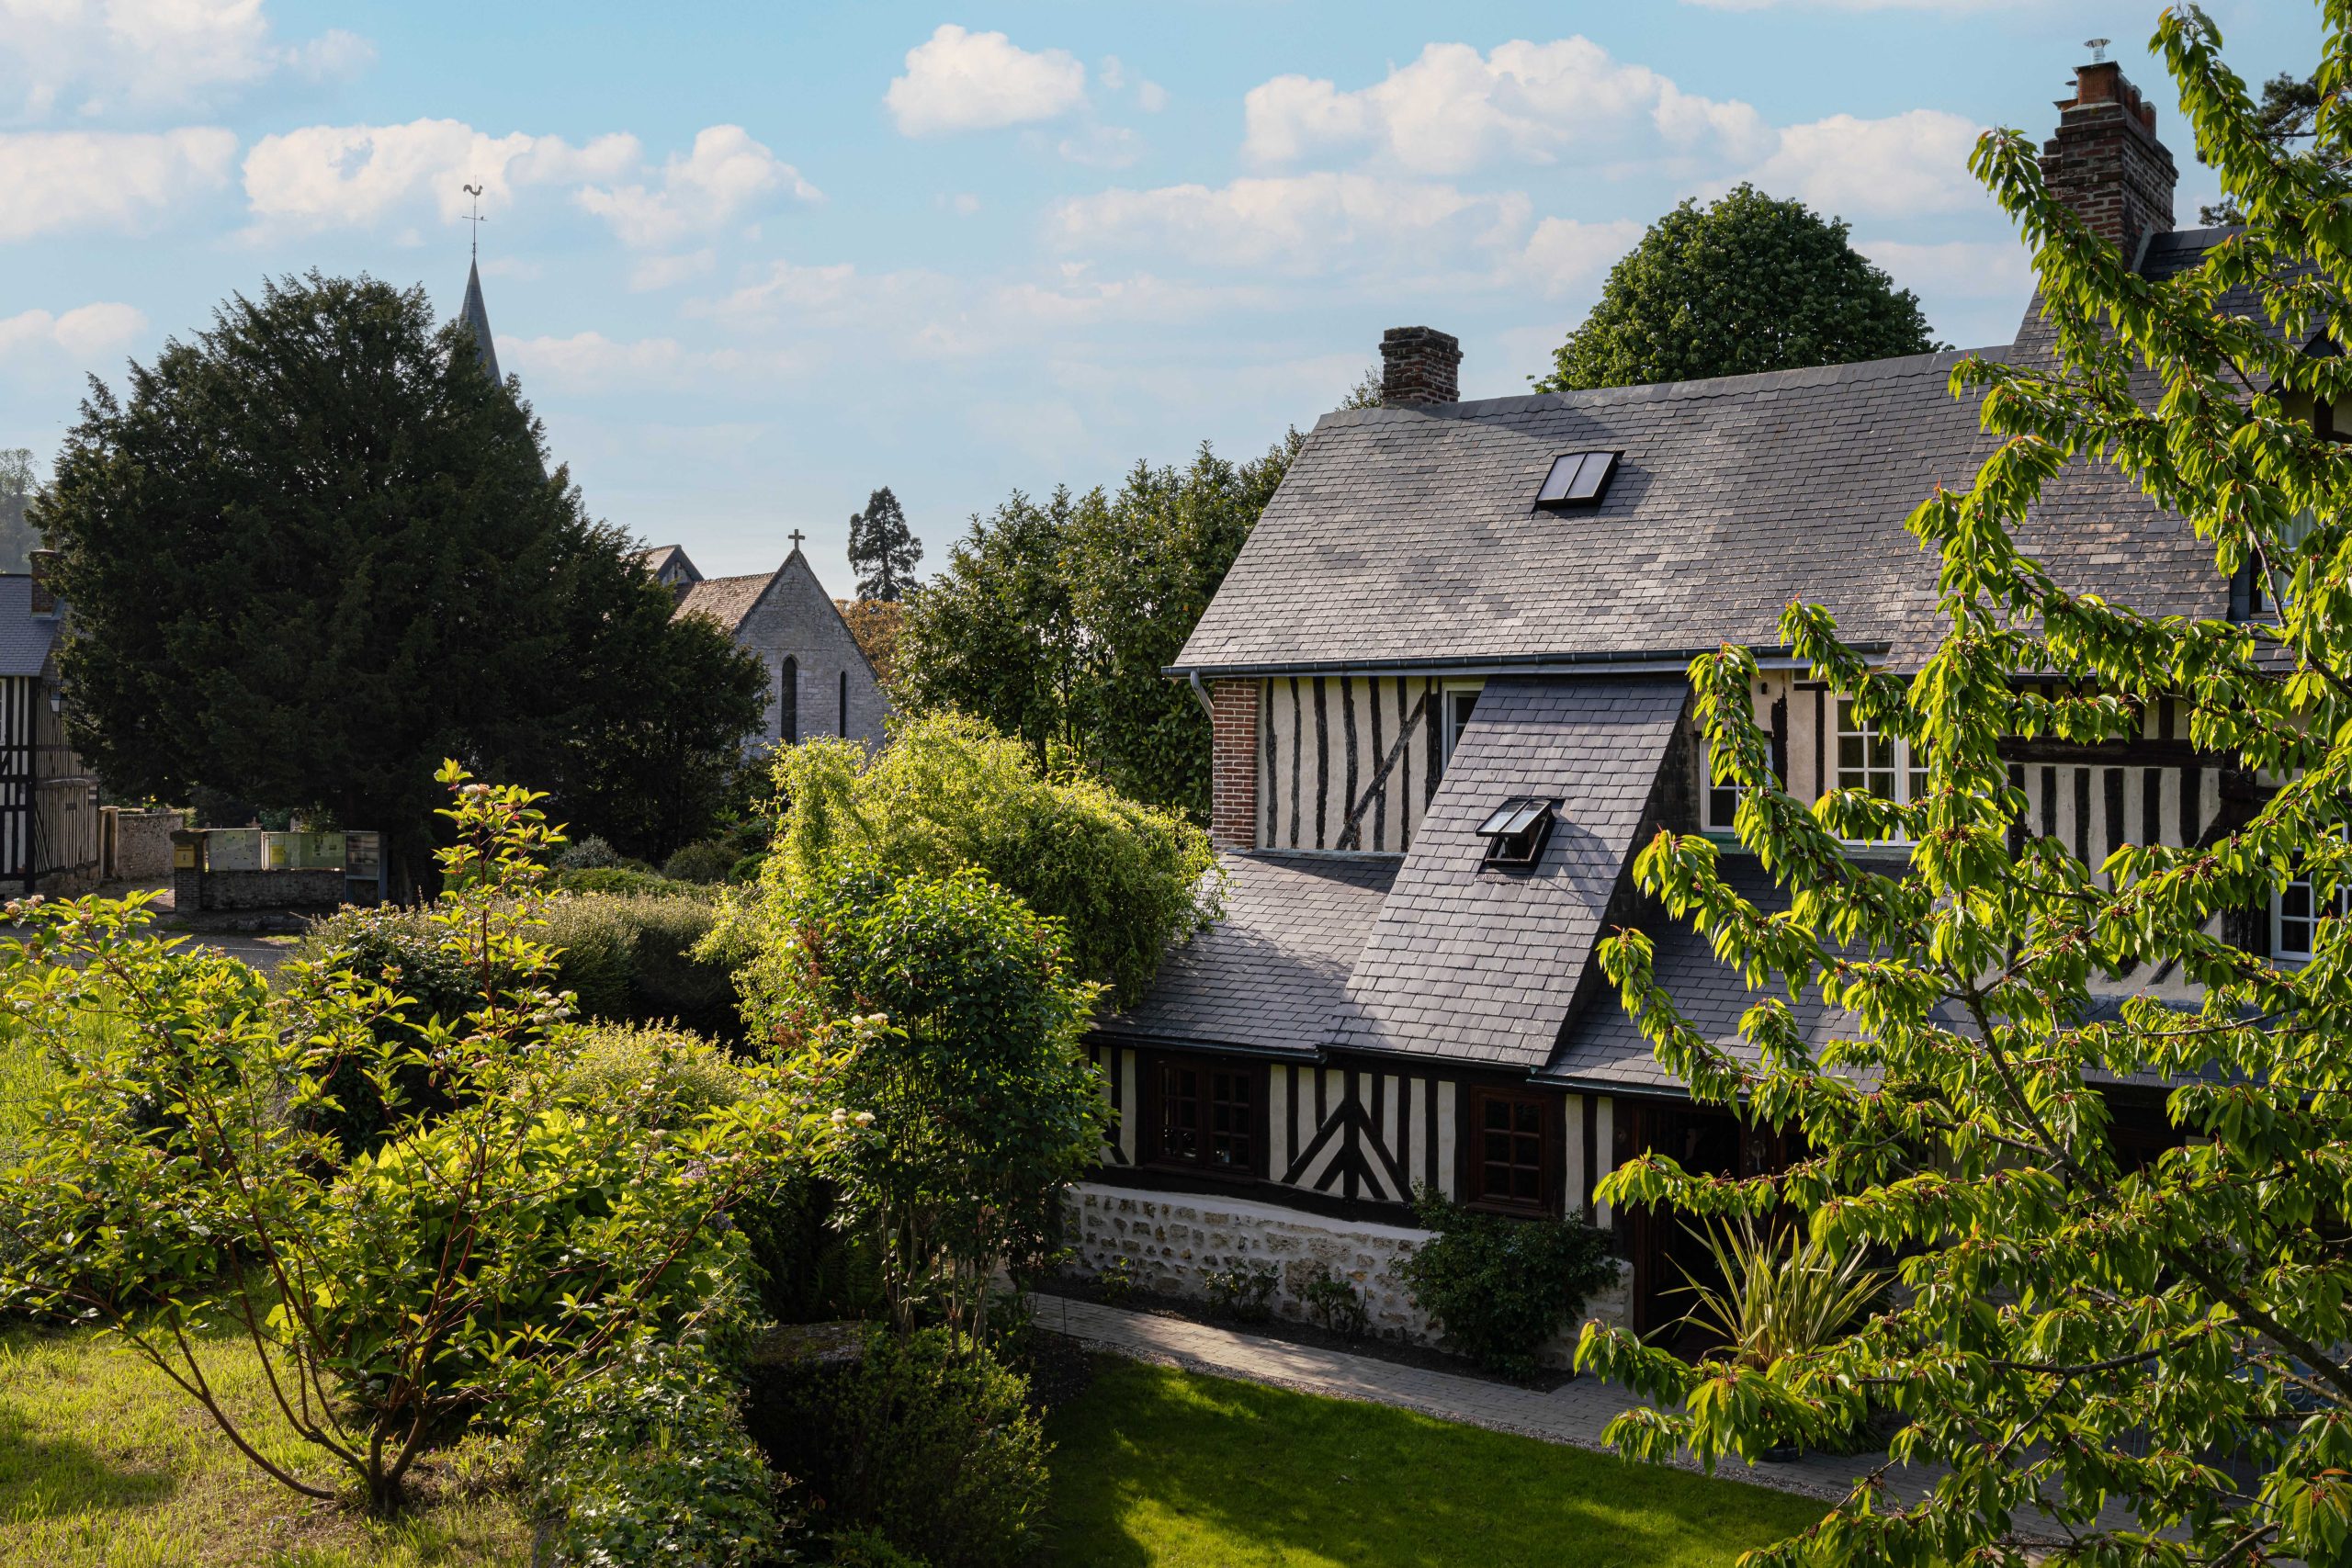 steinhaus mit schieferdach, umgeben von grün - cottage honfleur